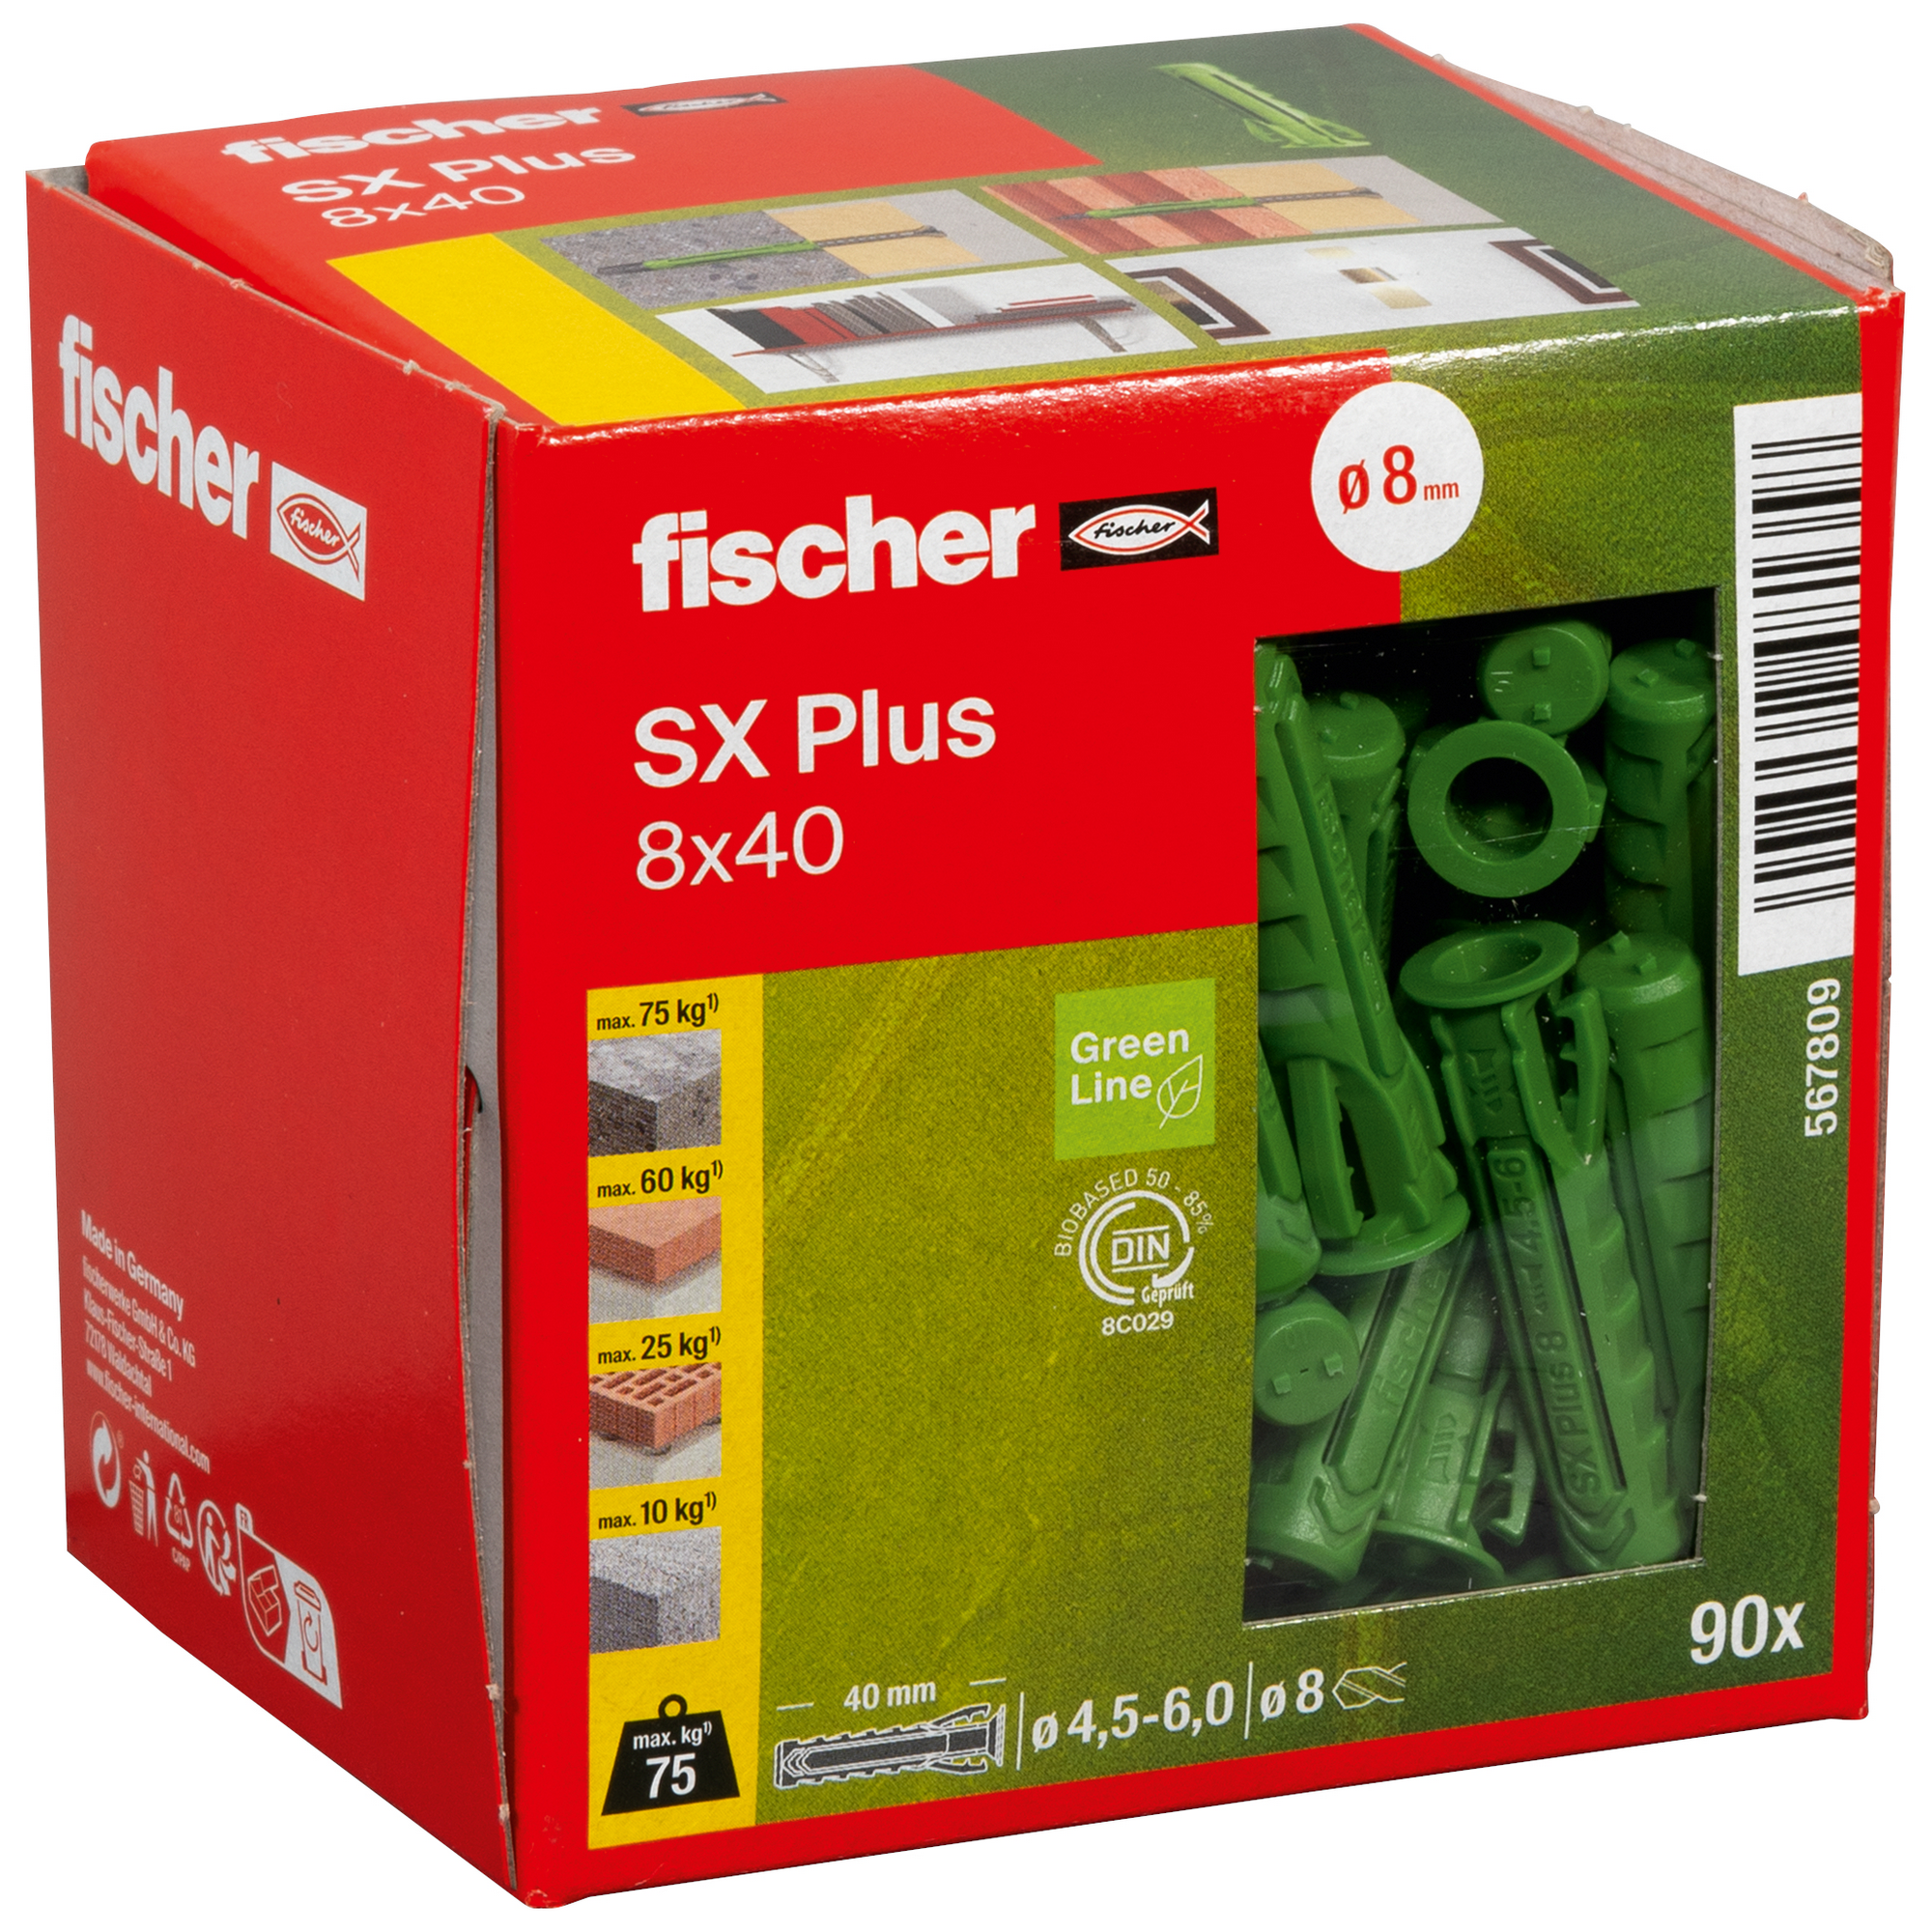 Spreizdübel-Set 'SX Plus Green' Ø 8 x 40 mm, 90-teilig + product picture